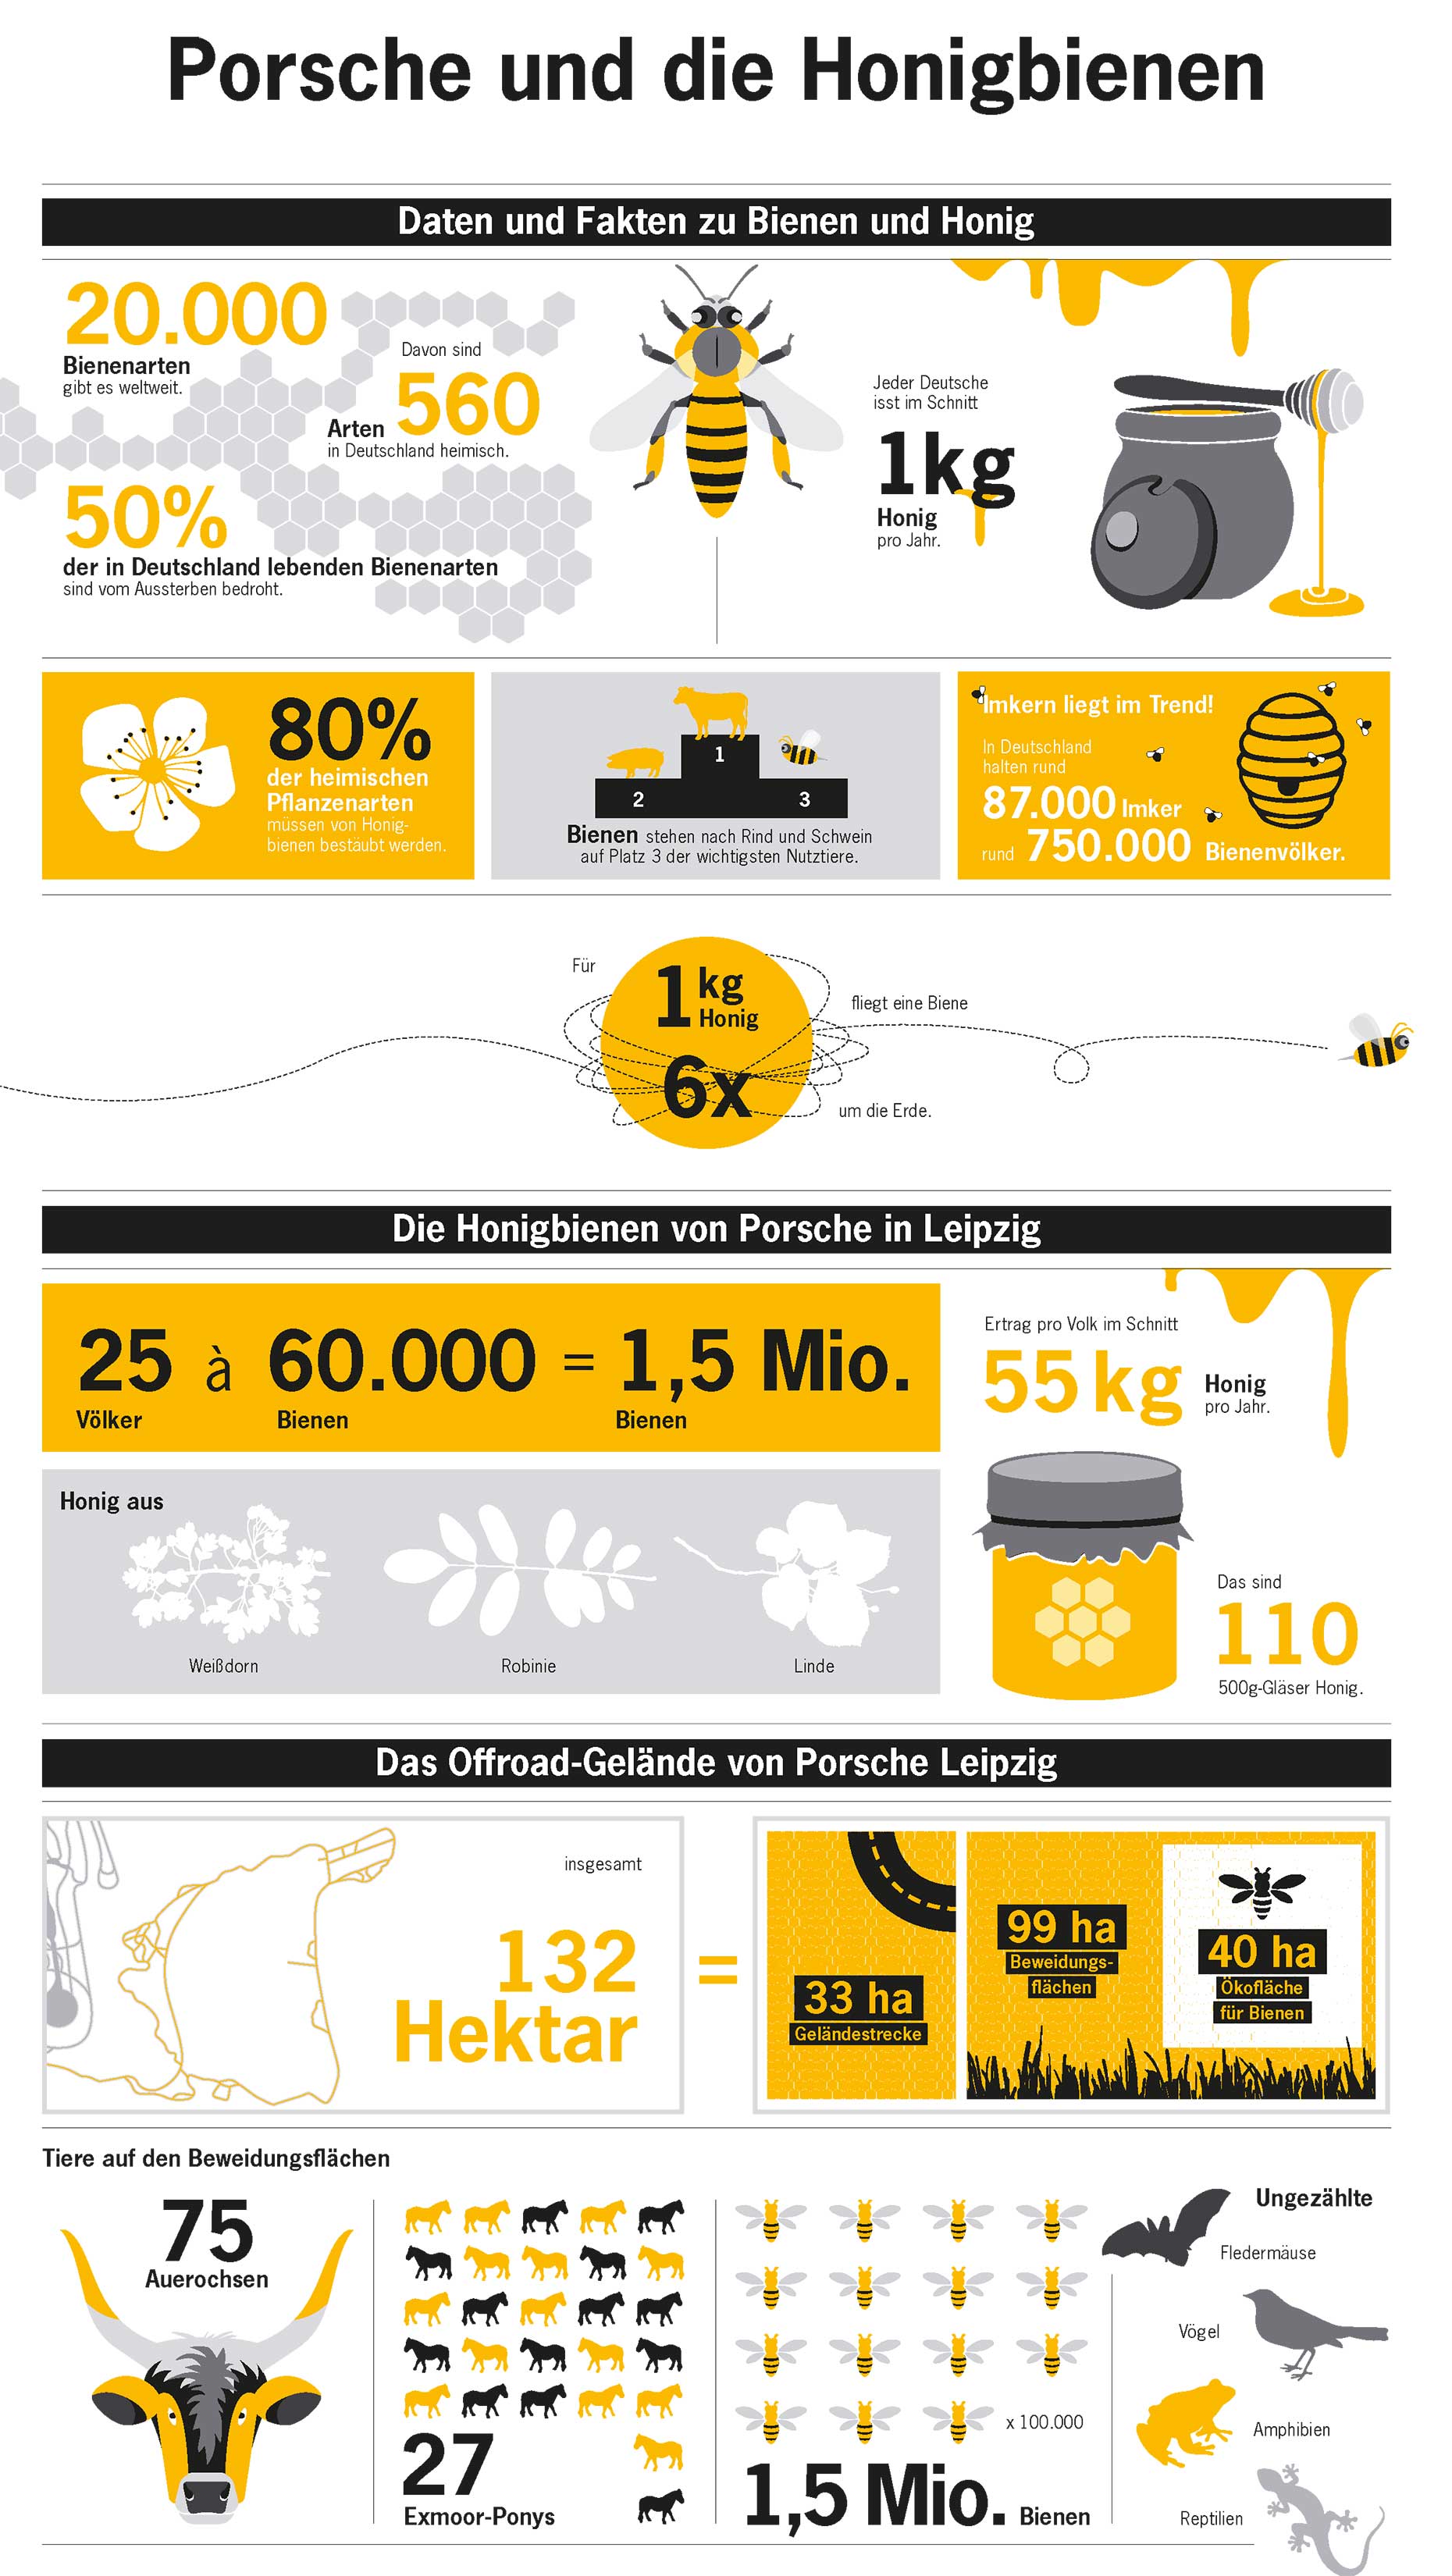 Porsche und die Honigbienen, Infografik, 2017, Porsche AG